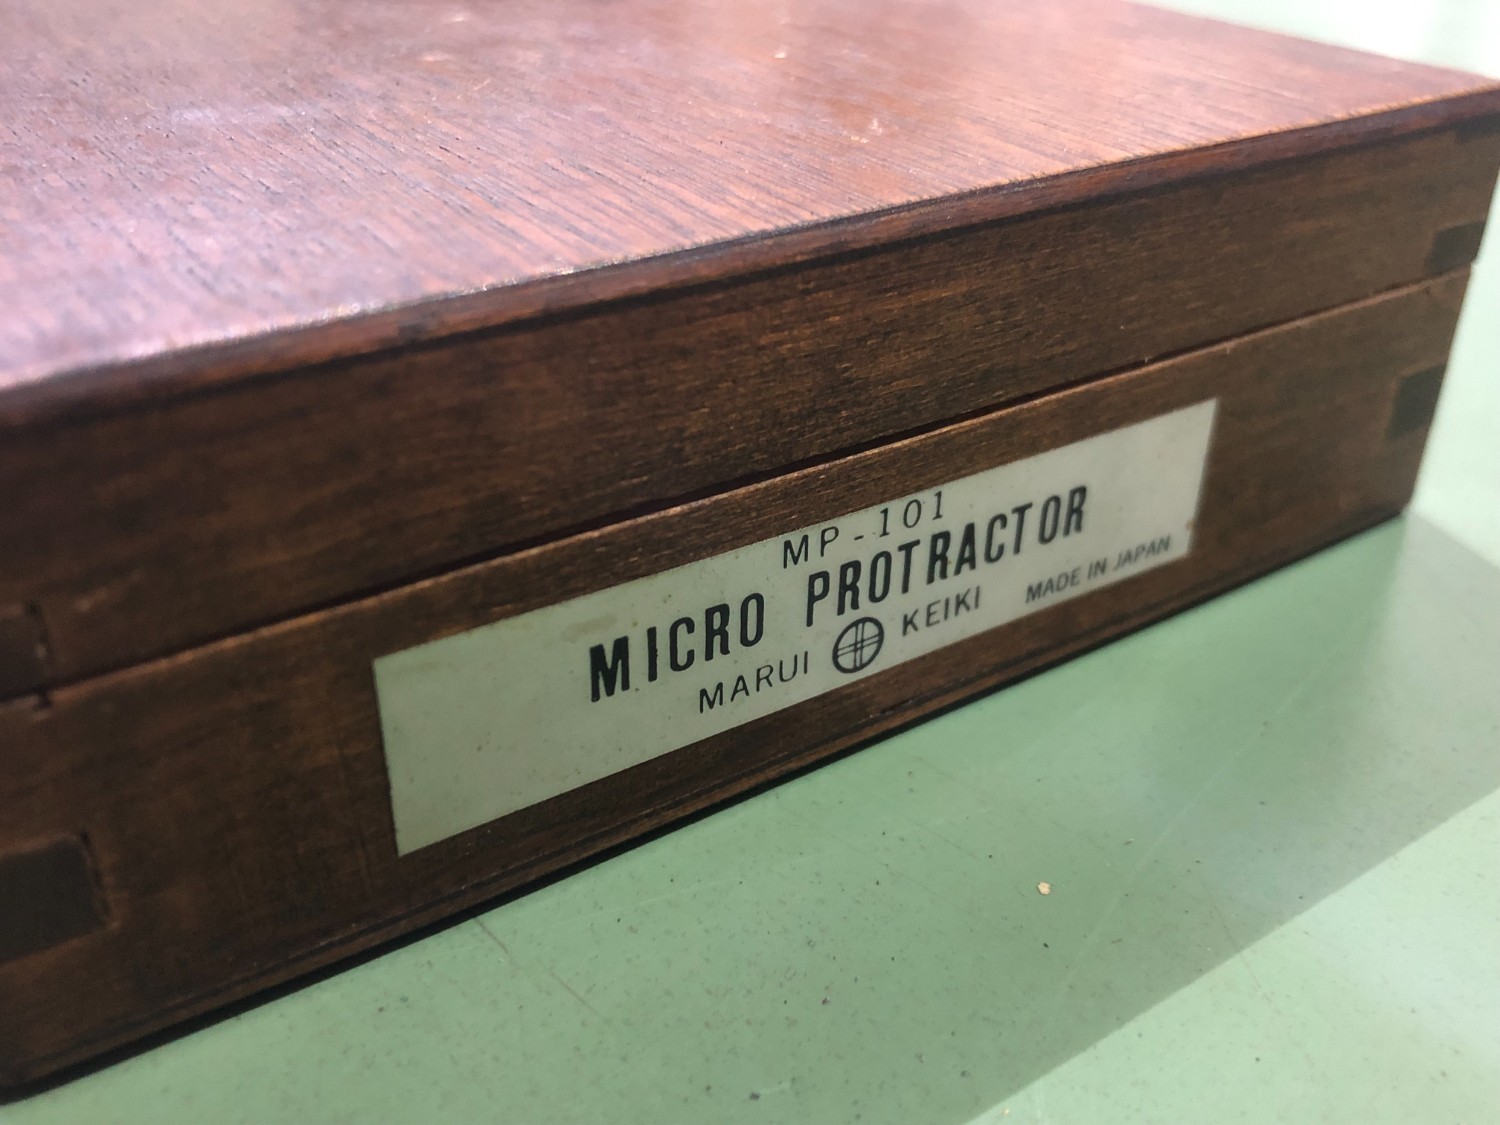 中古Other(Micrometer) マイクロプロトラクターMP-101  MARUI KEIKI 